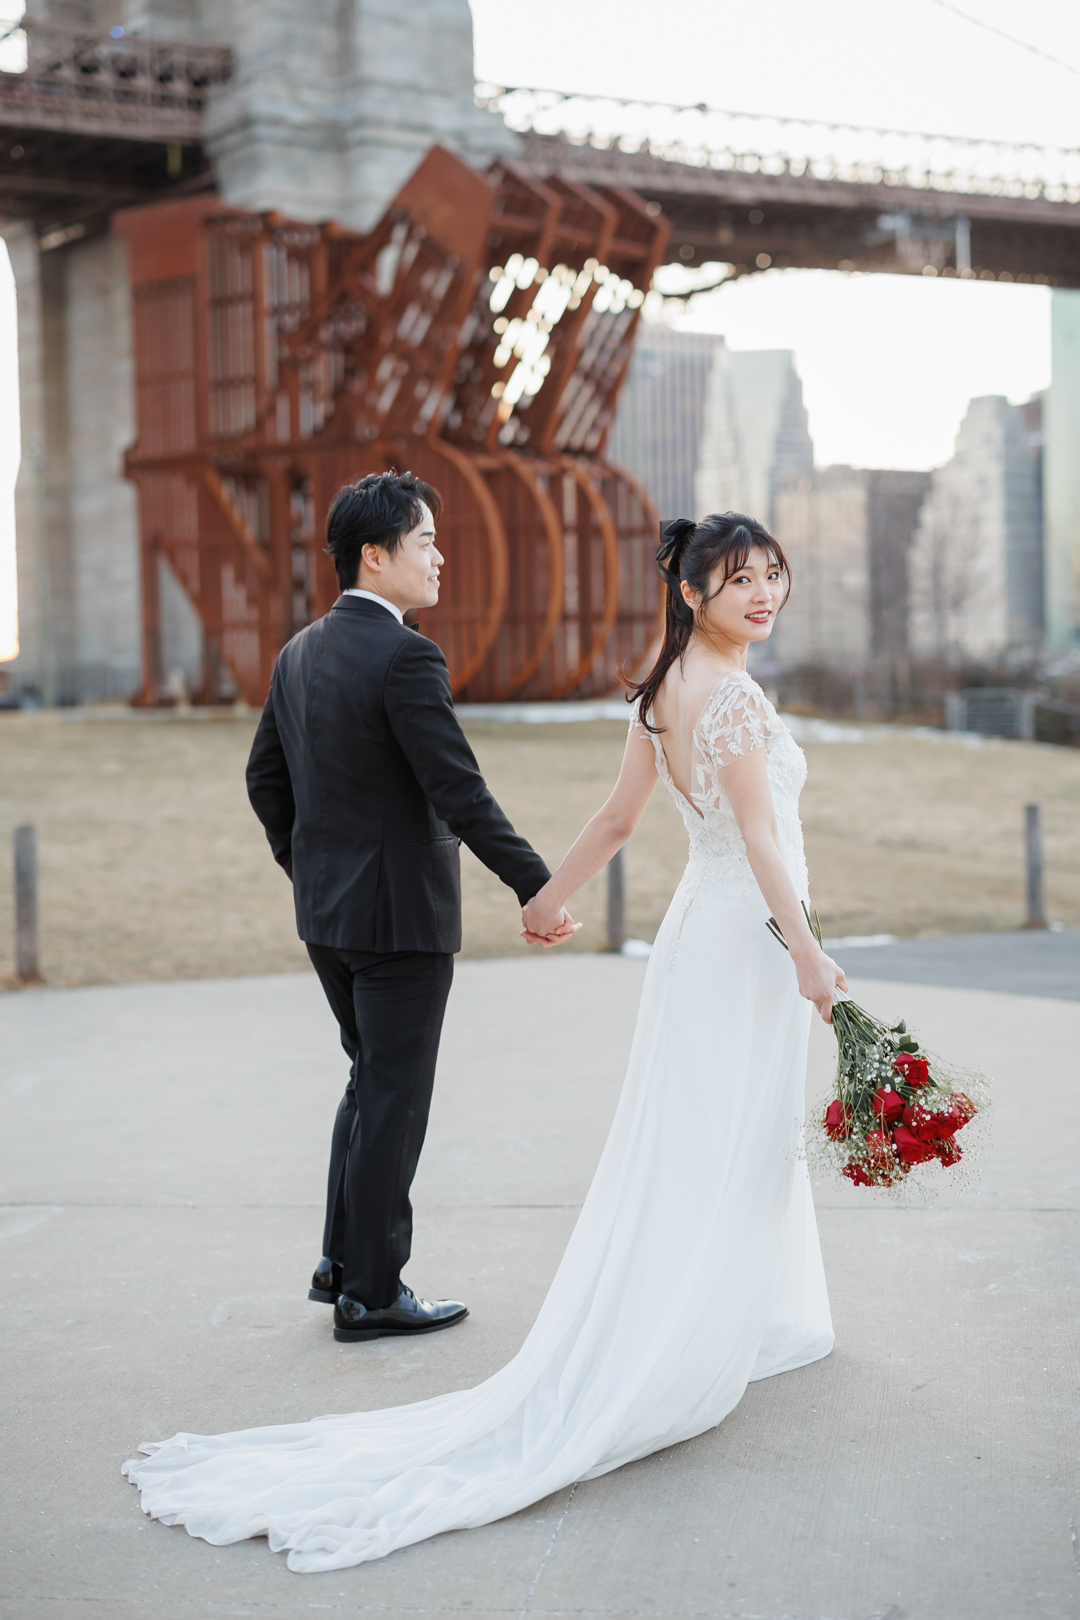 アメリカニューヨークの前撮り/フォトウェディング/スレンダーラインのウェディングドレスを着た花嫁。